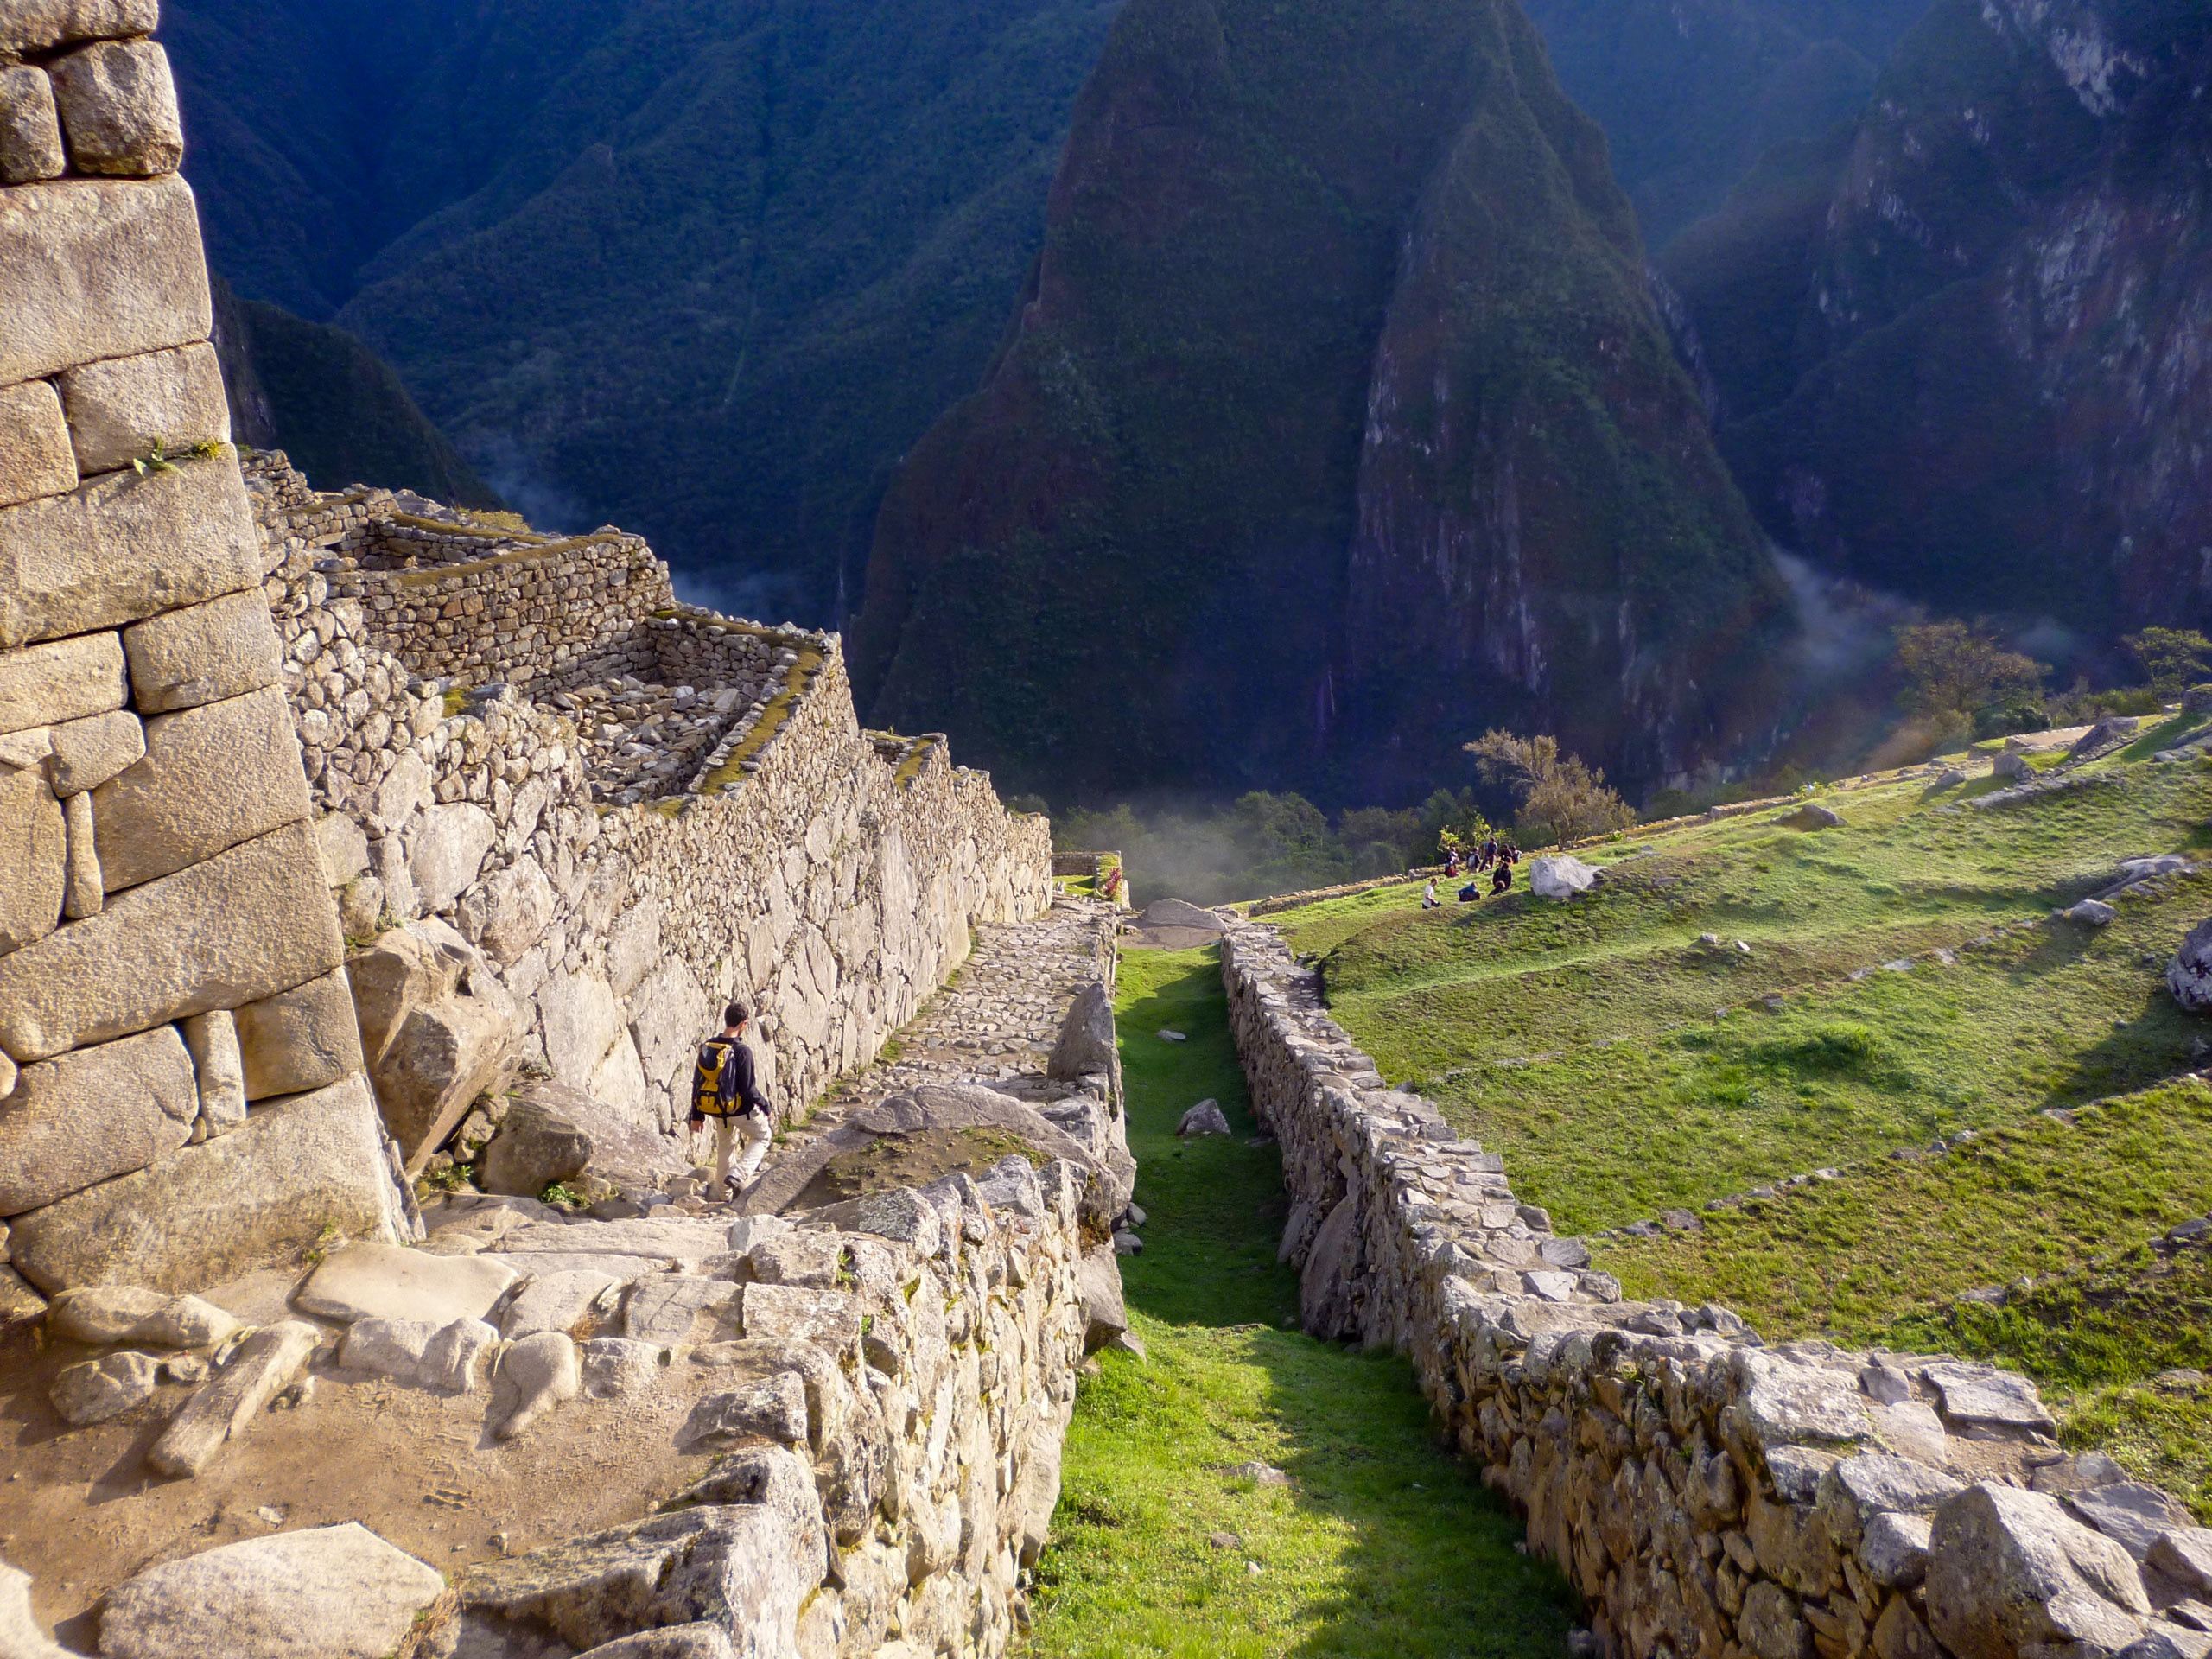 Inca Trail trek in Peru leads to Macchu Pichu ancient stone village